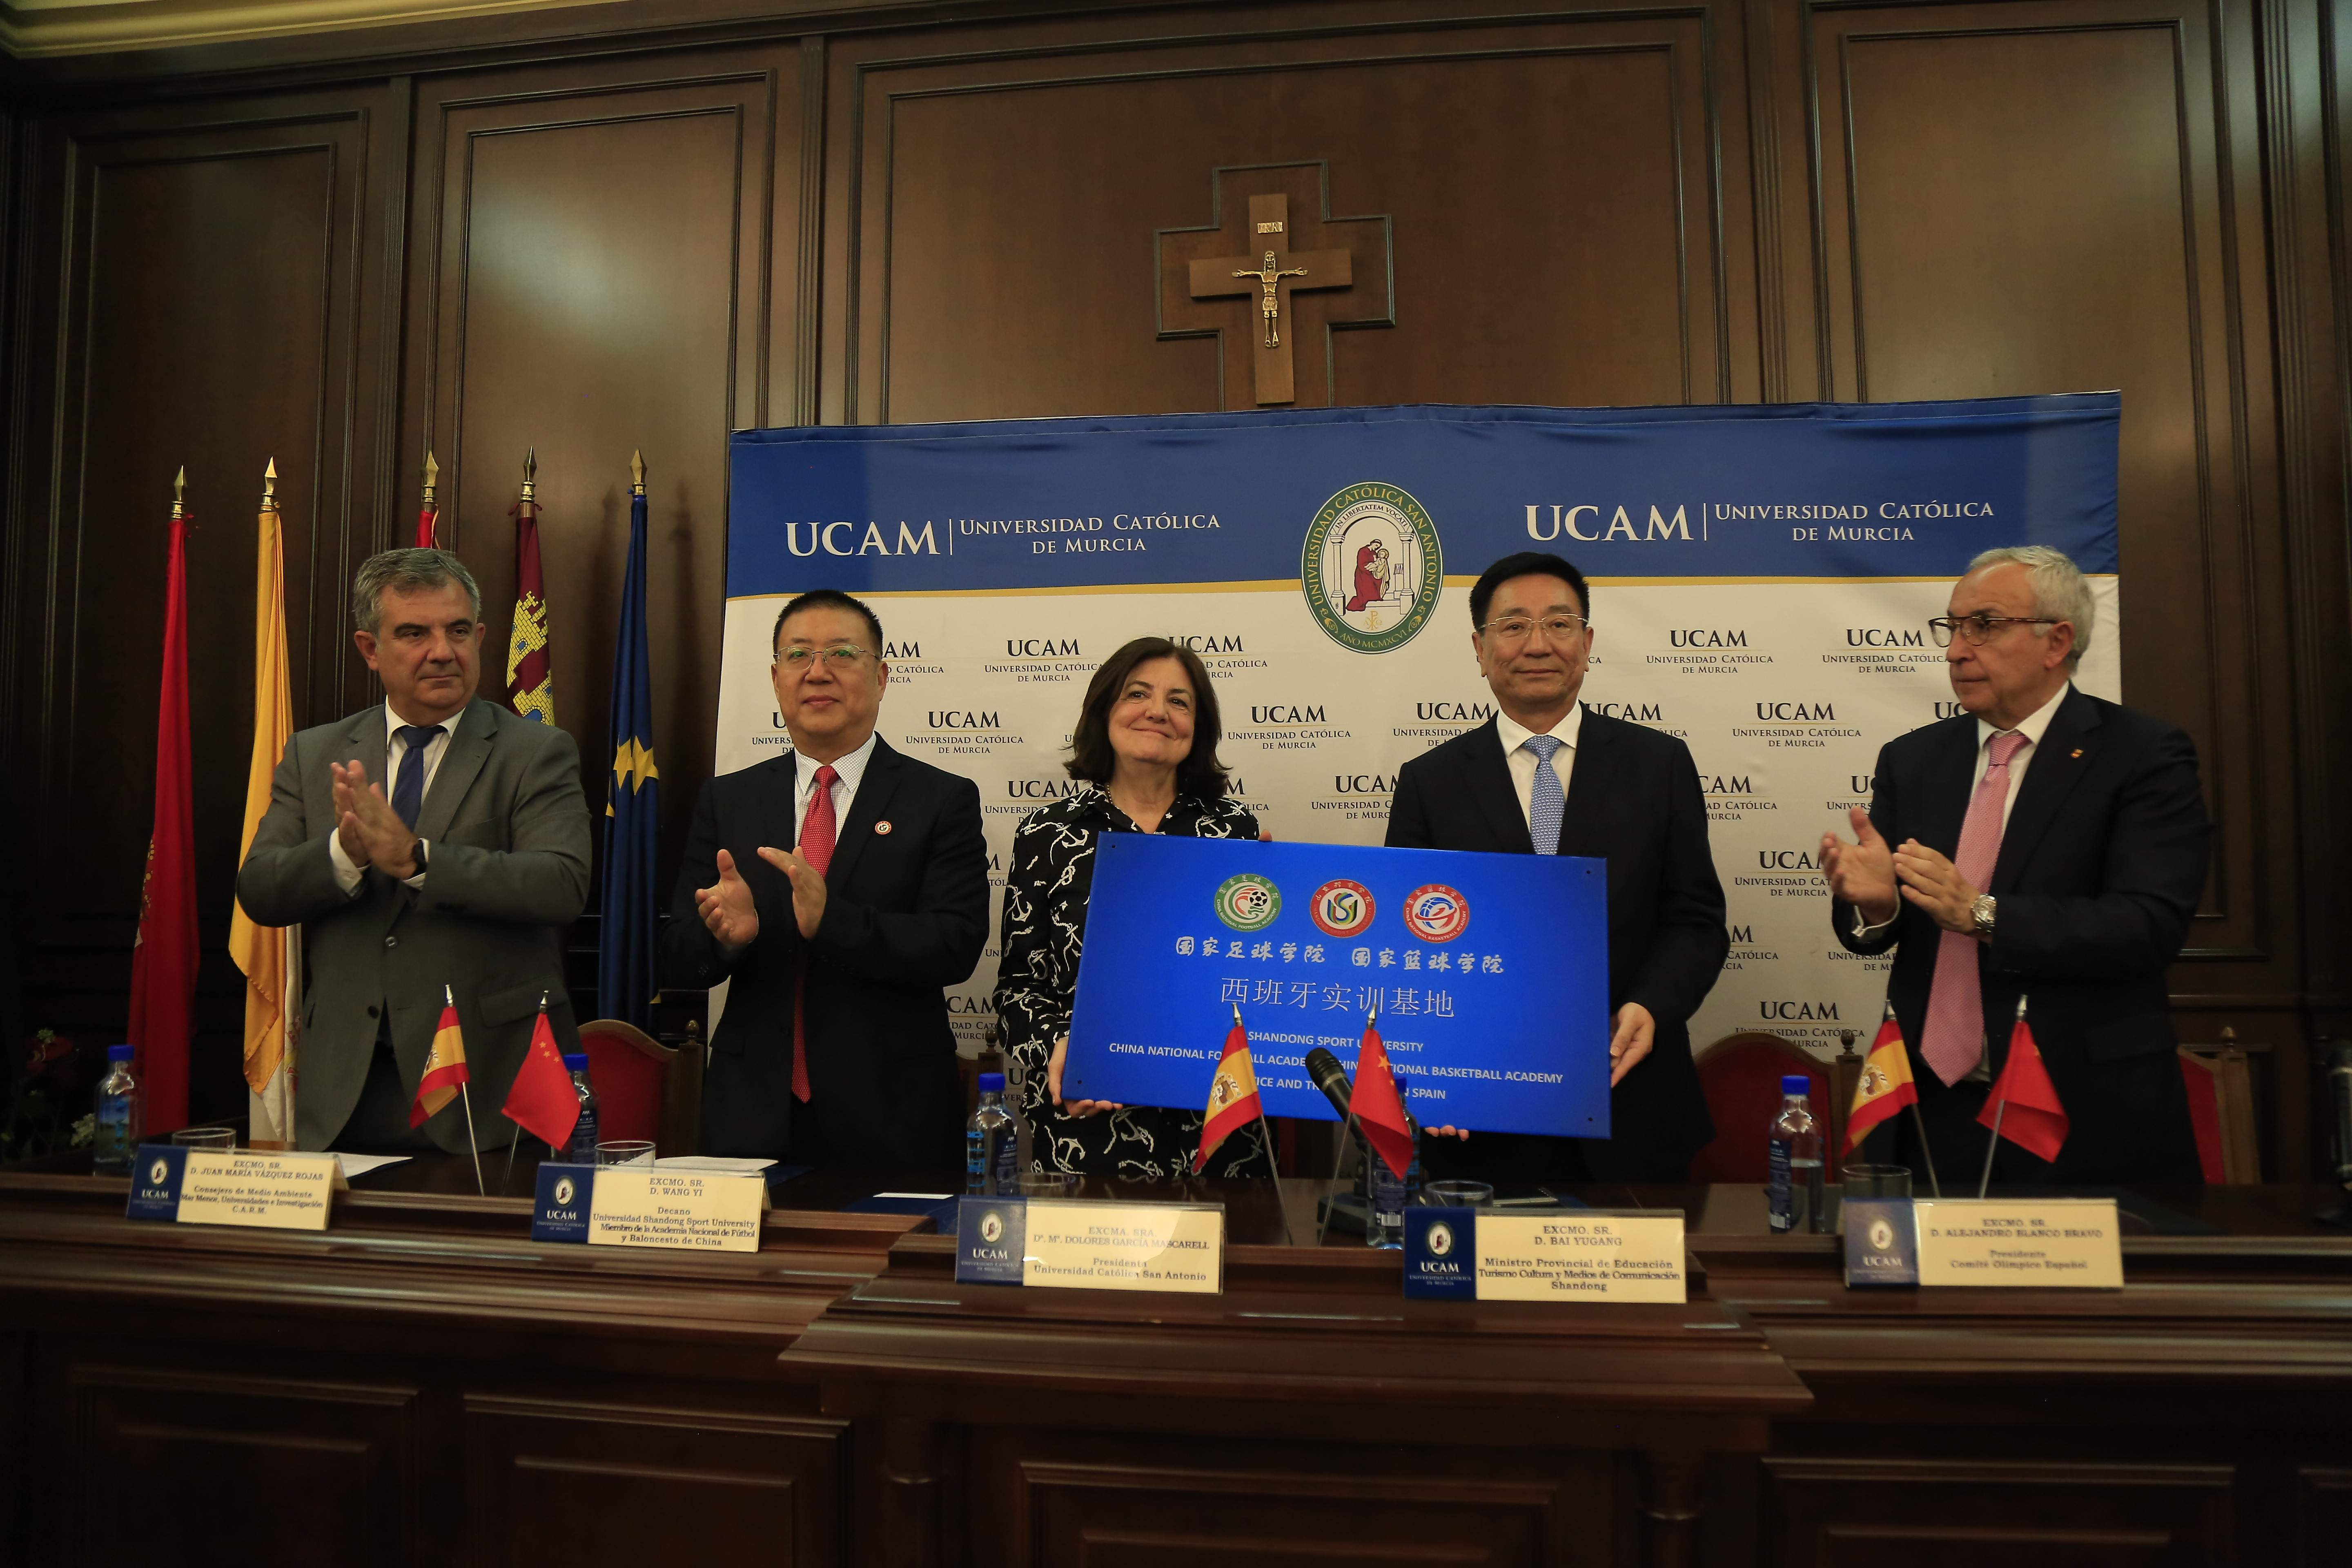 Los gobiernos regionales de Murcia y Shandong refuerzan sus relaciones de la mano de la UCAM